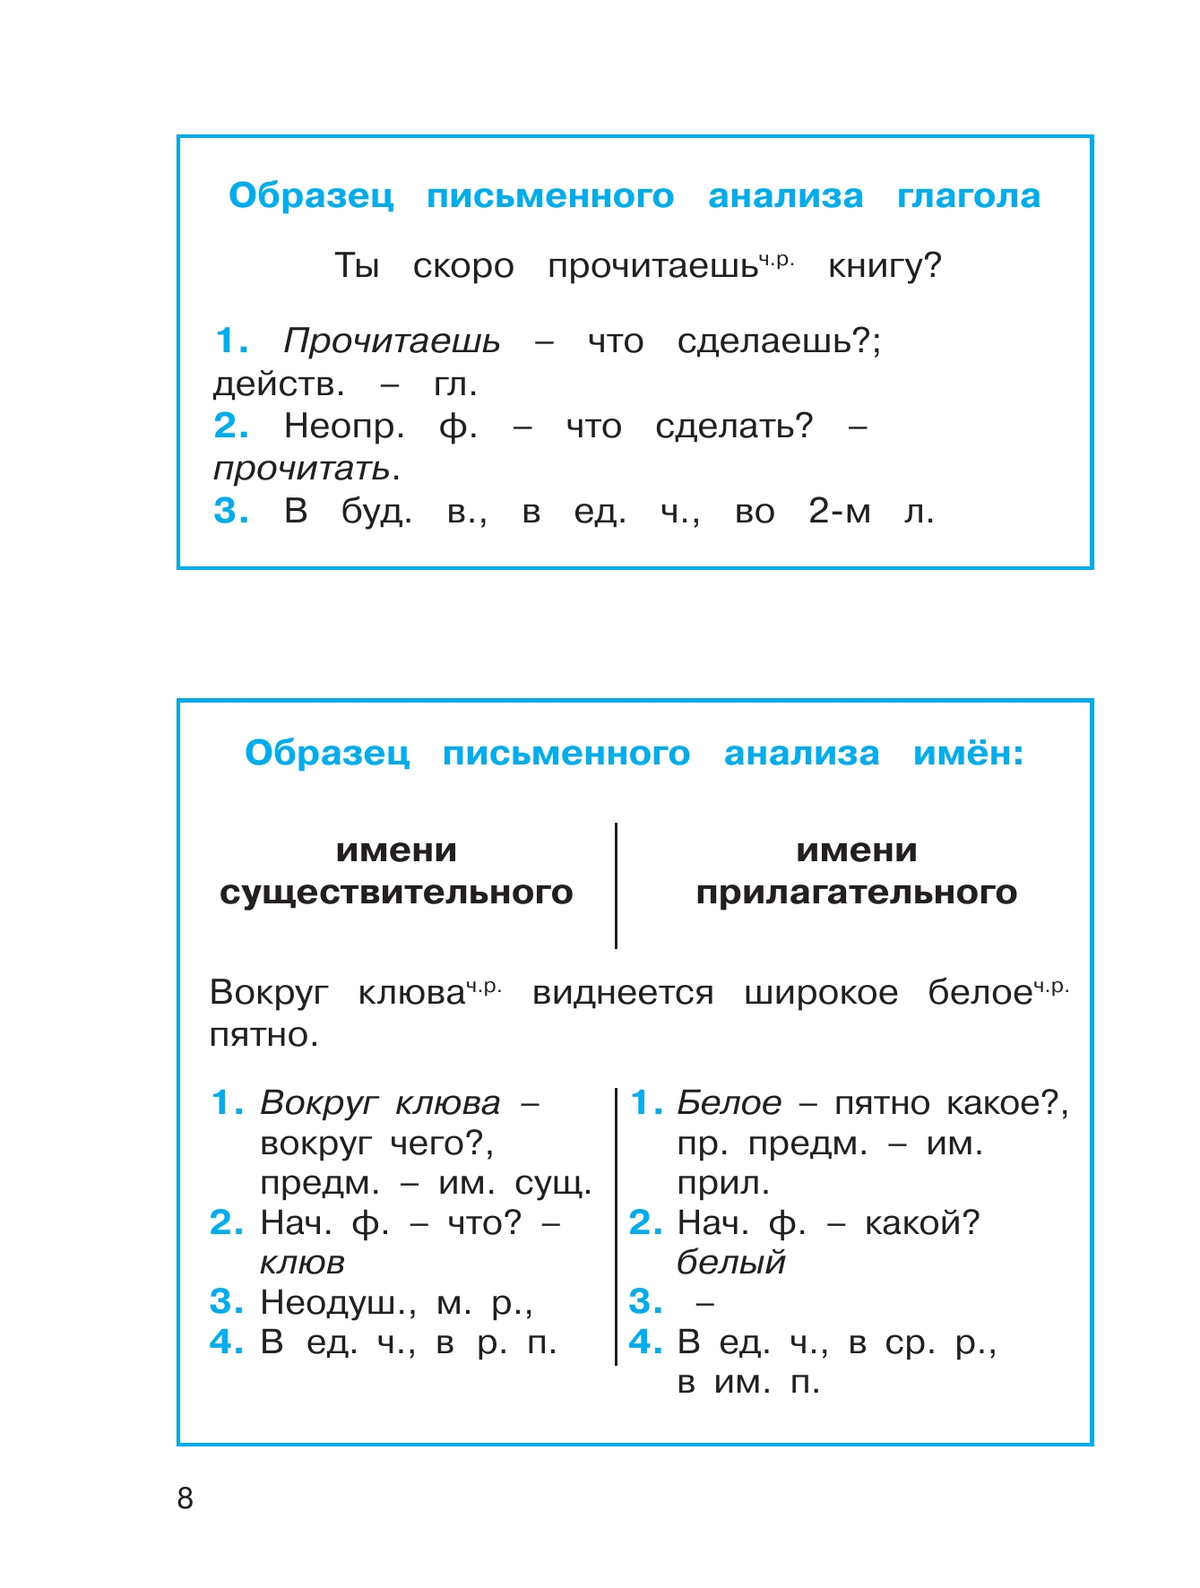 Русский язык: Тетрадь-задачник. 4 класс. В 3 частях. Часть 1 9